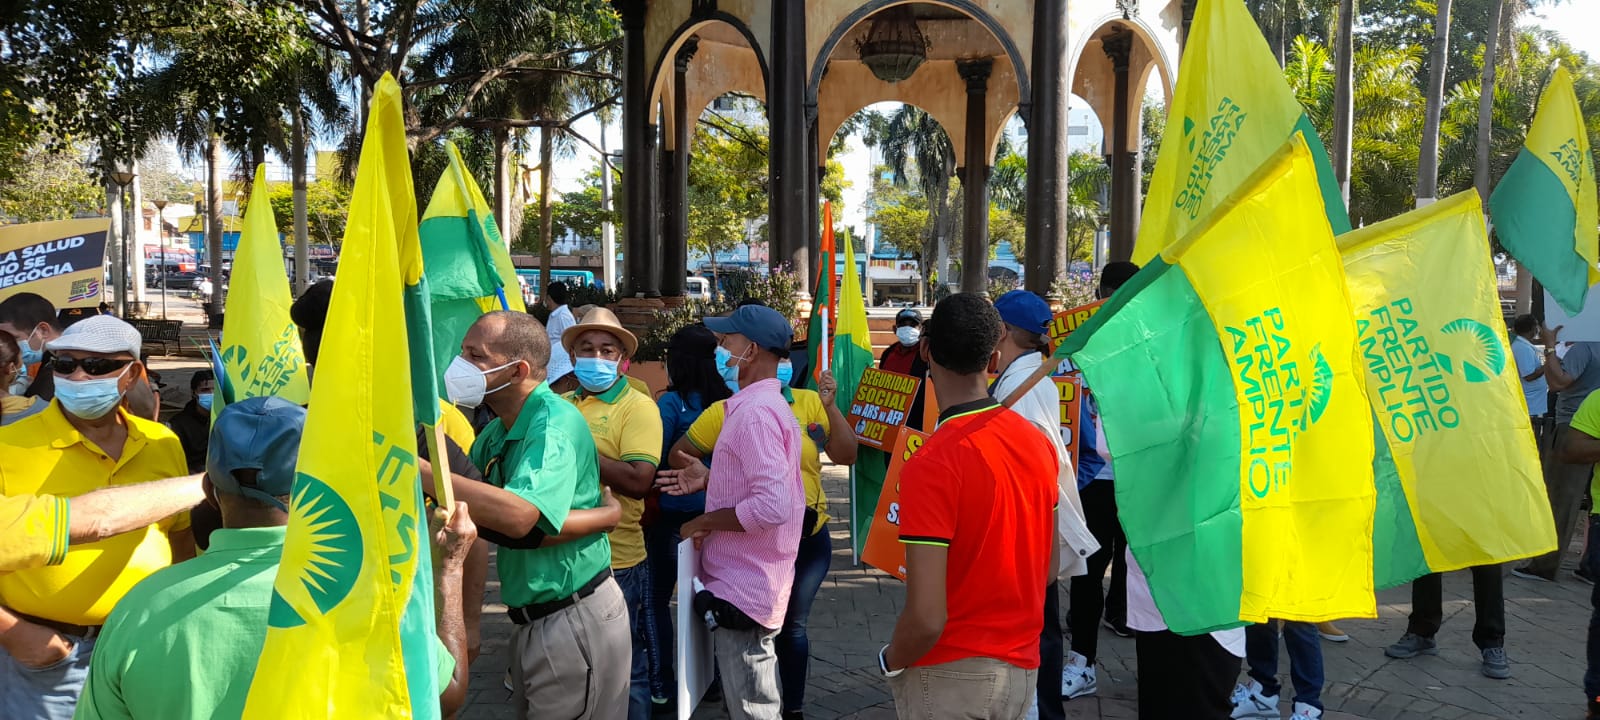 Con pancartas en manos y consignas aludiendo a la causa, decenas de manifestantes se reunieron desde tempranas horas de la mañana en el Parque Enriquillo de la Avenida Duarte